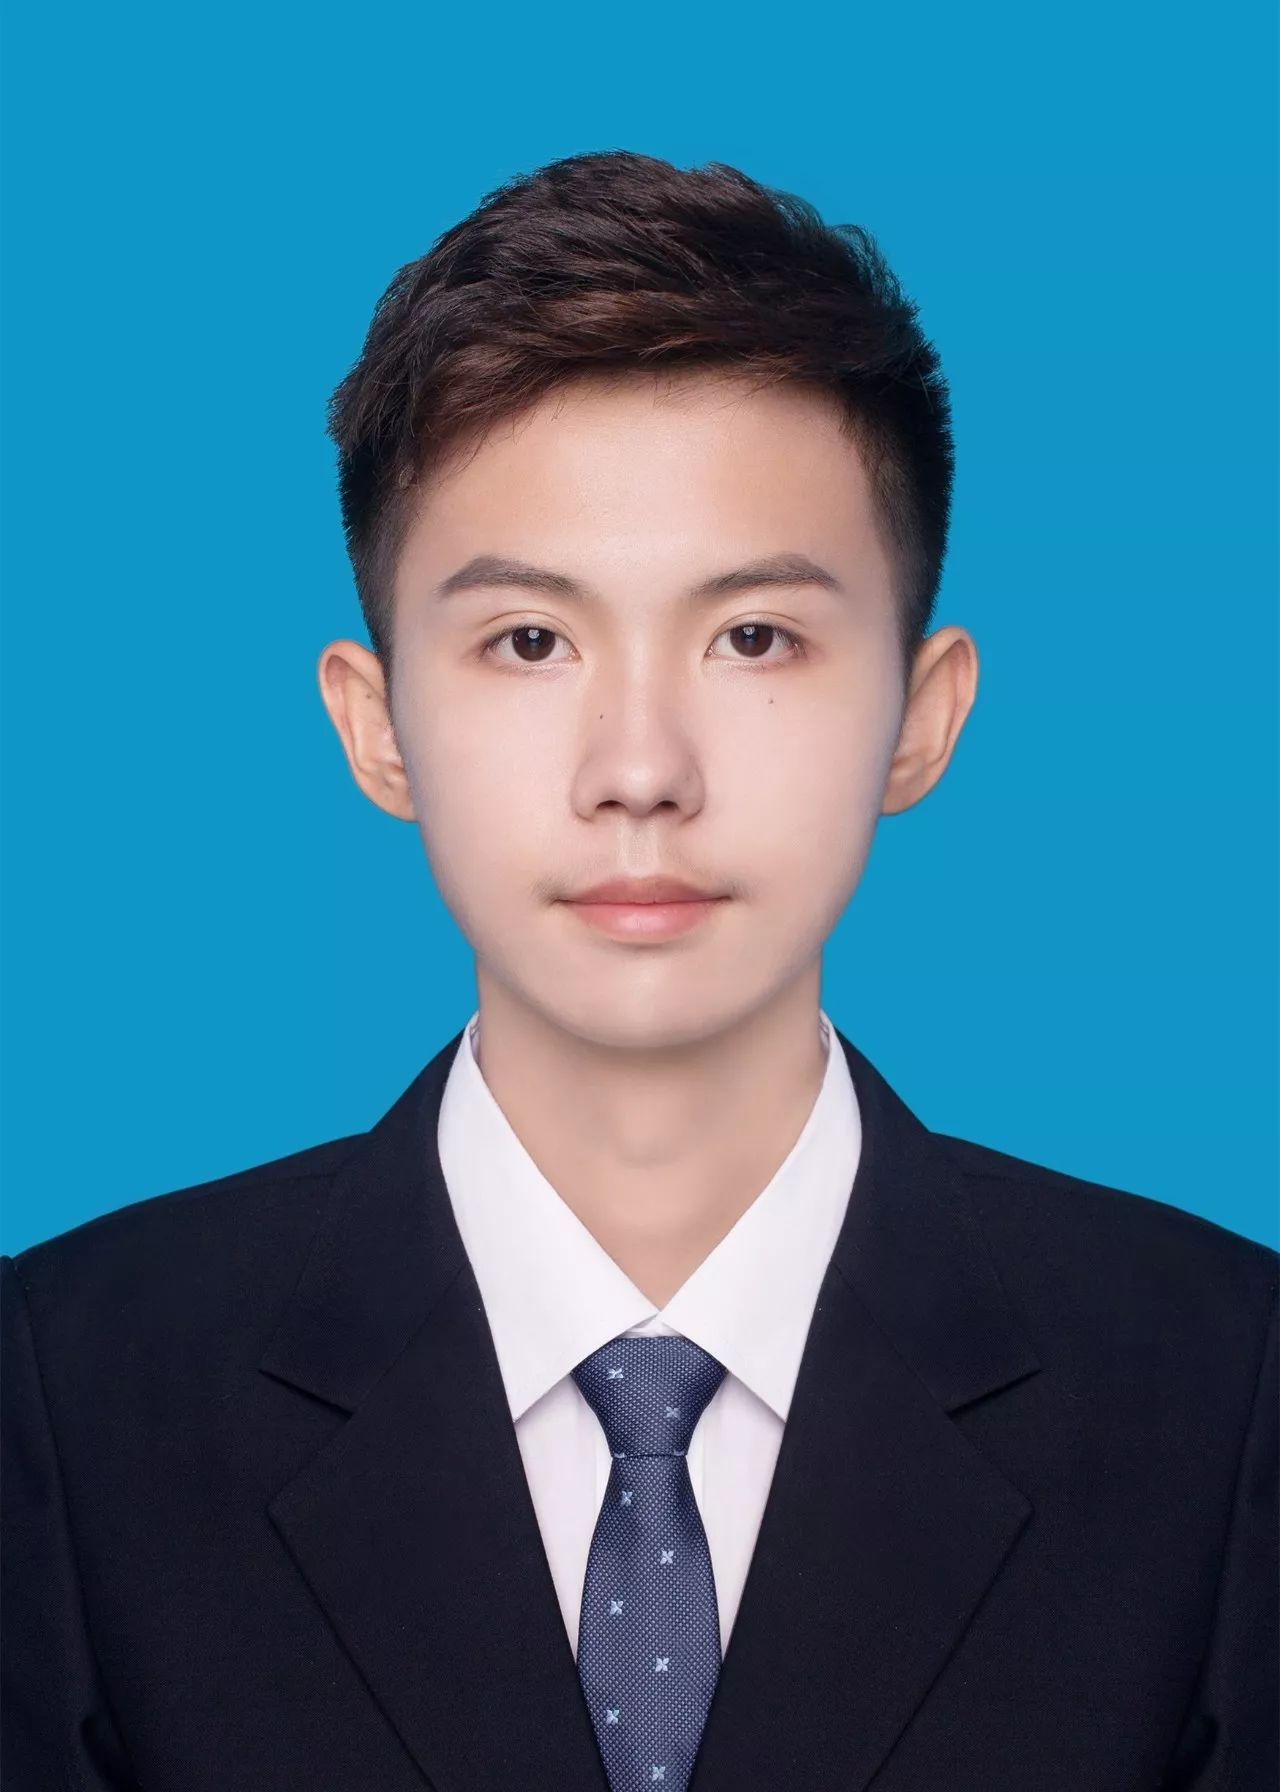 网感帅气20岁的中国男模半身人像摄影图AI人像免费下载_png格式_928像素_编号50568457-千图网